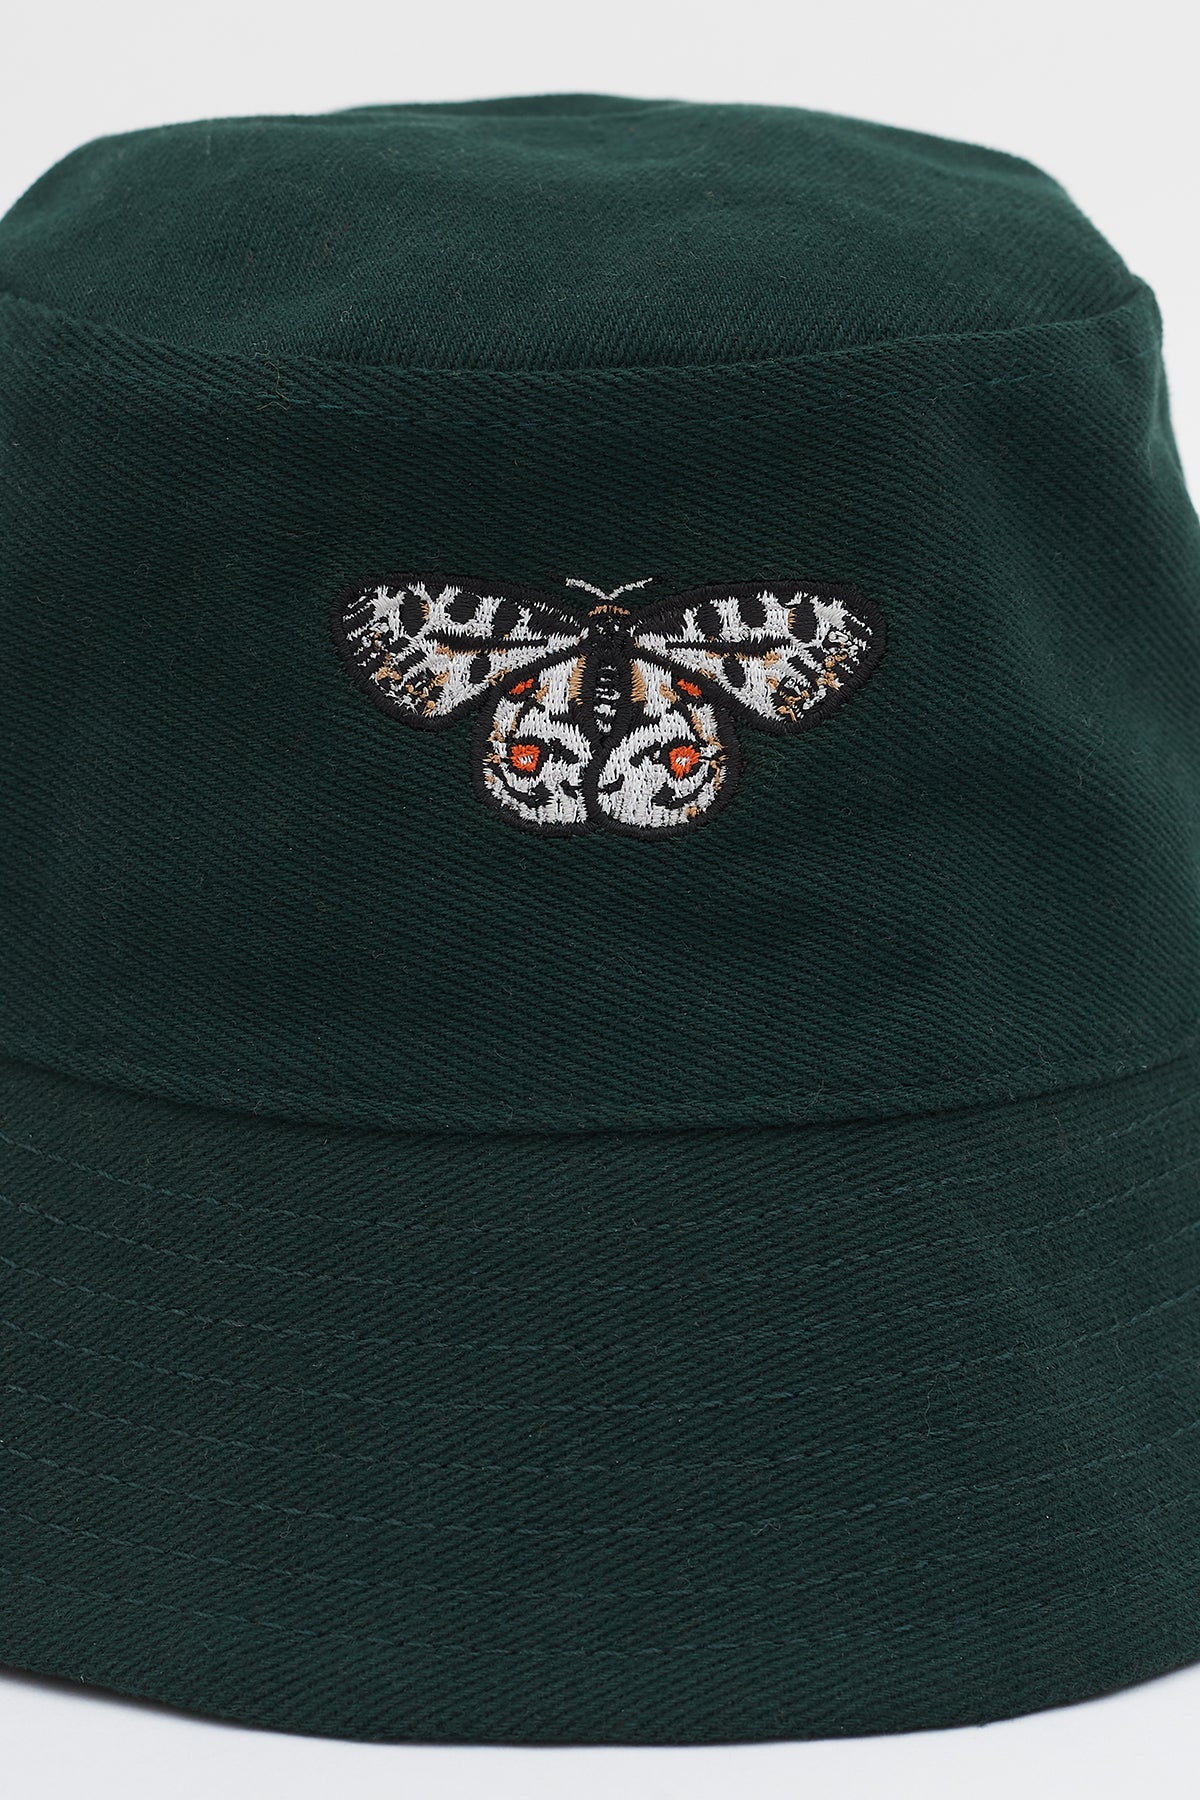 Apollo Kelebeği Balıkçı Şapka - Koyu Yeşil